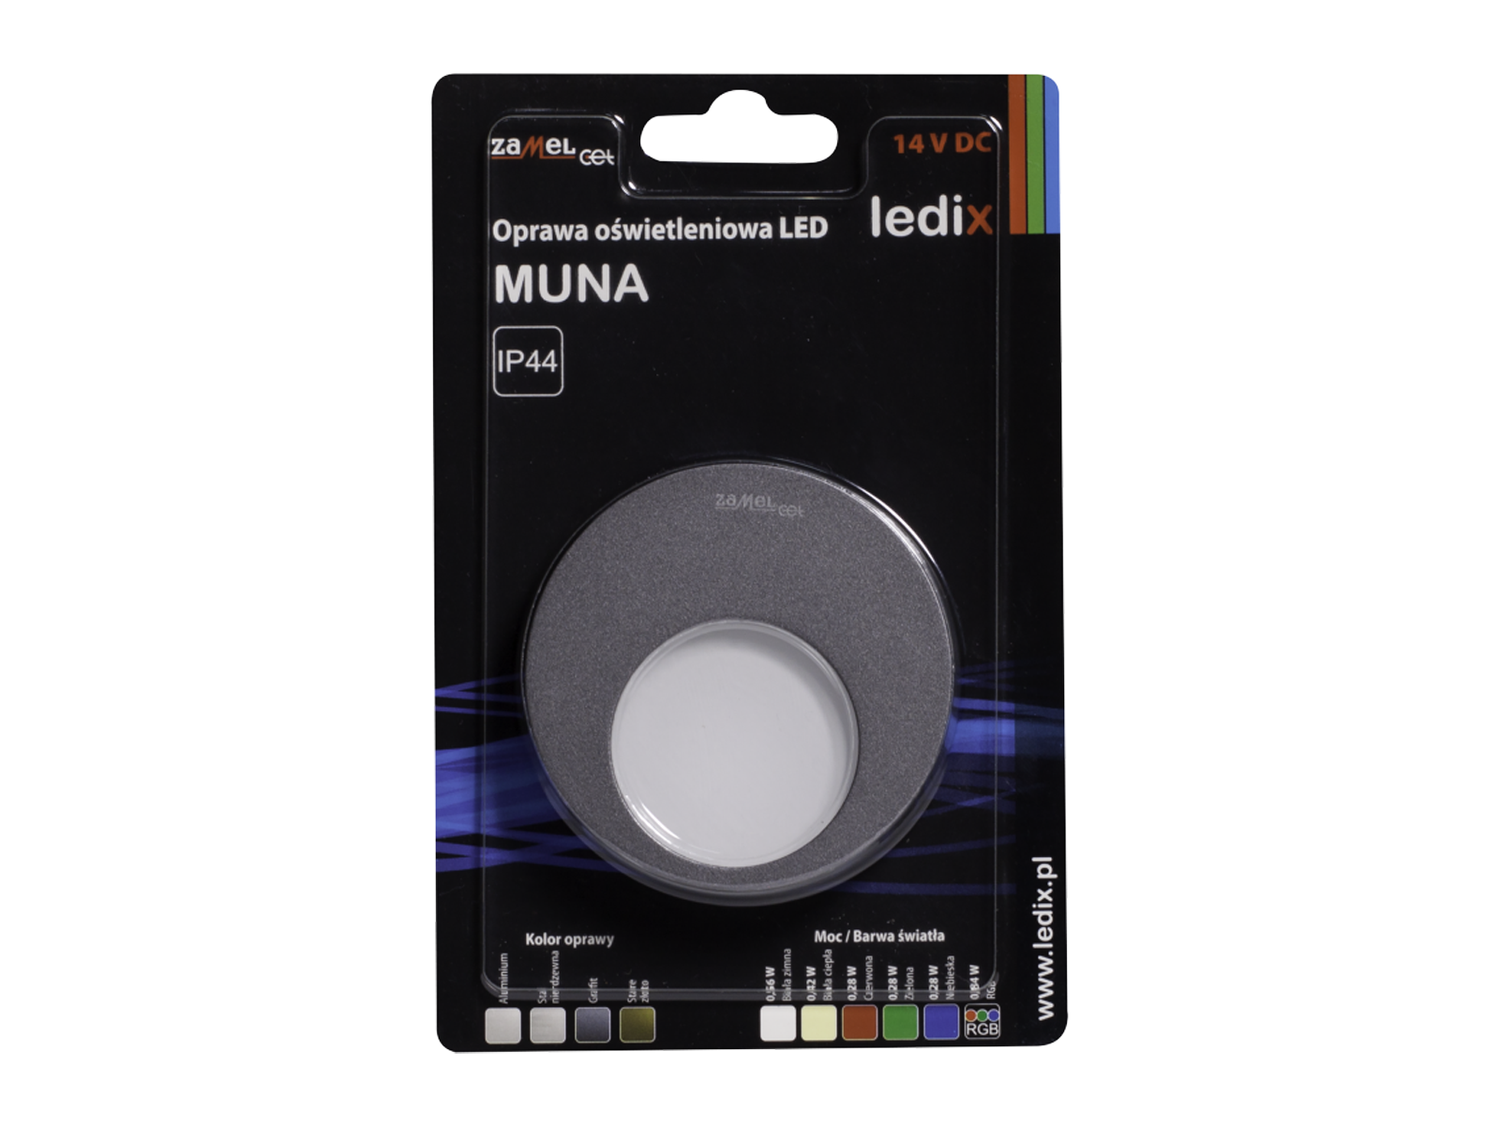 Svítidlo LED na omítku LEDIX MUNA 14V DC, grafit, teplá bílá, IP44